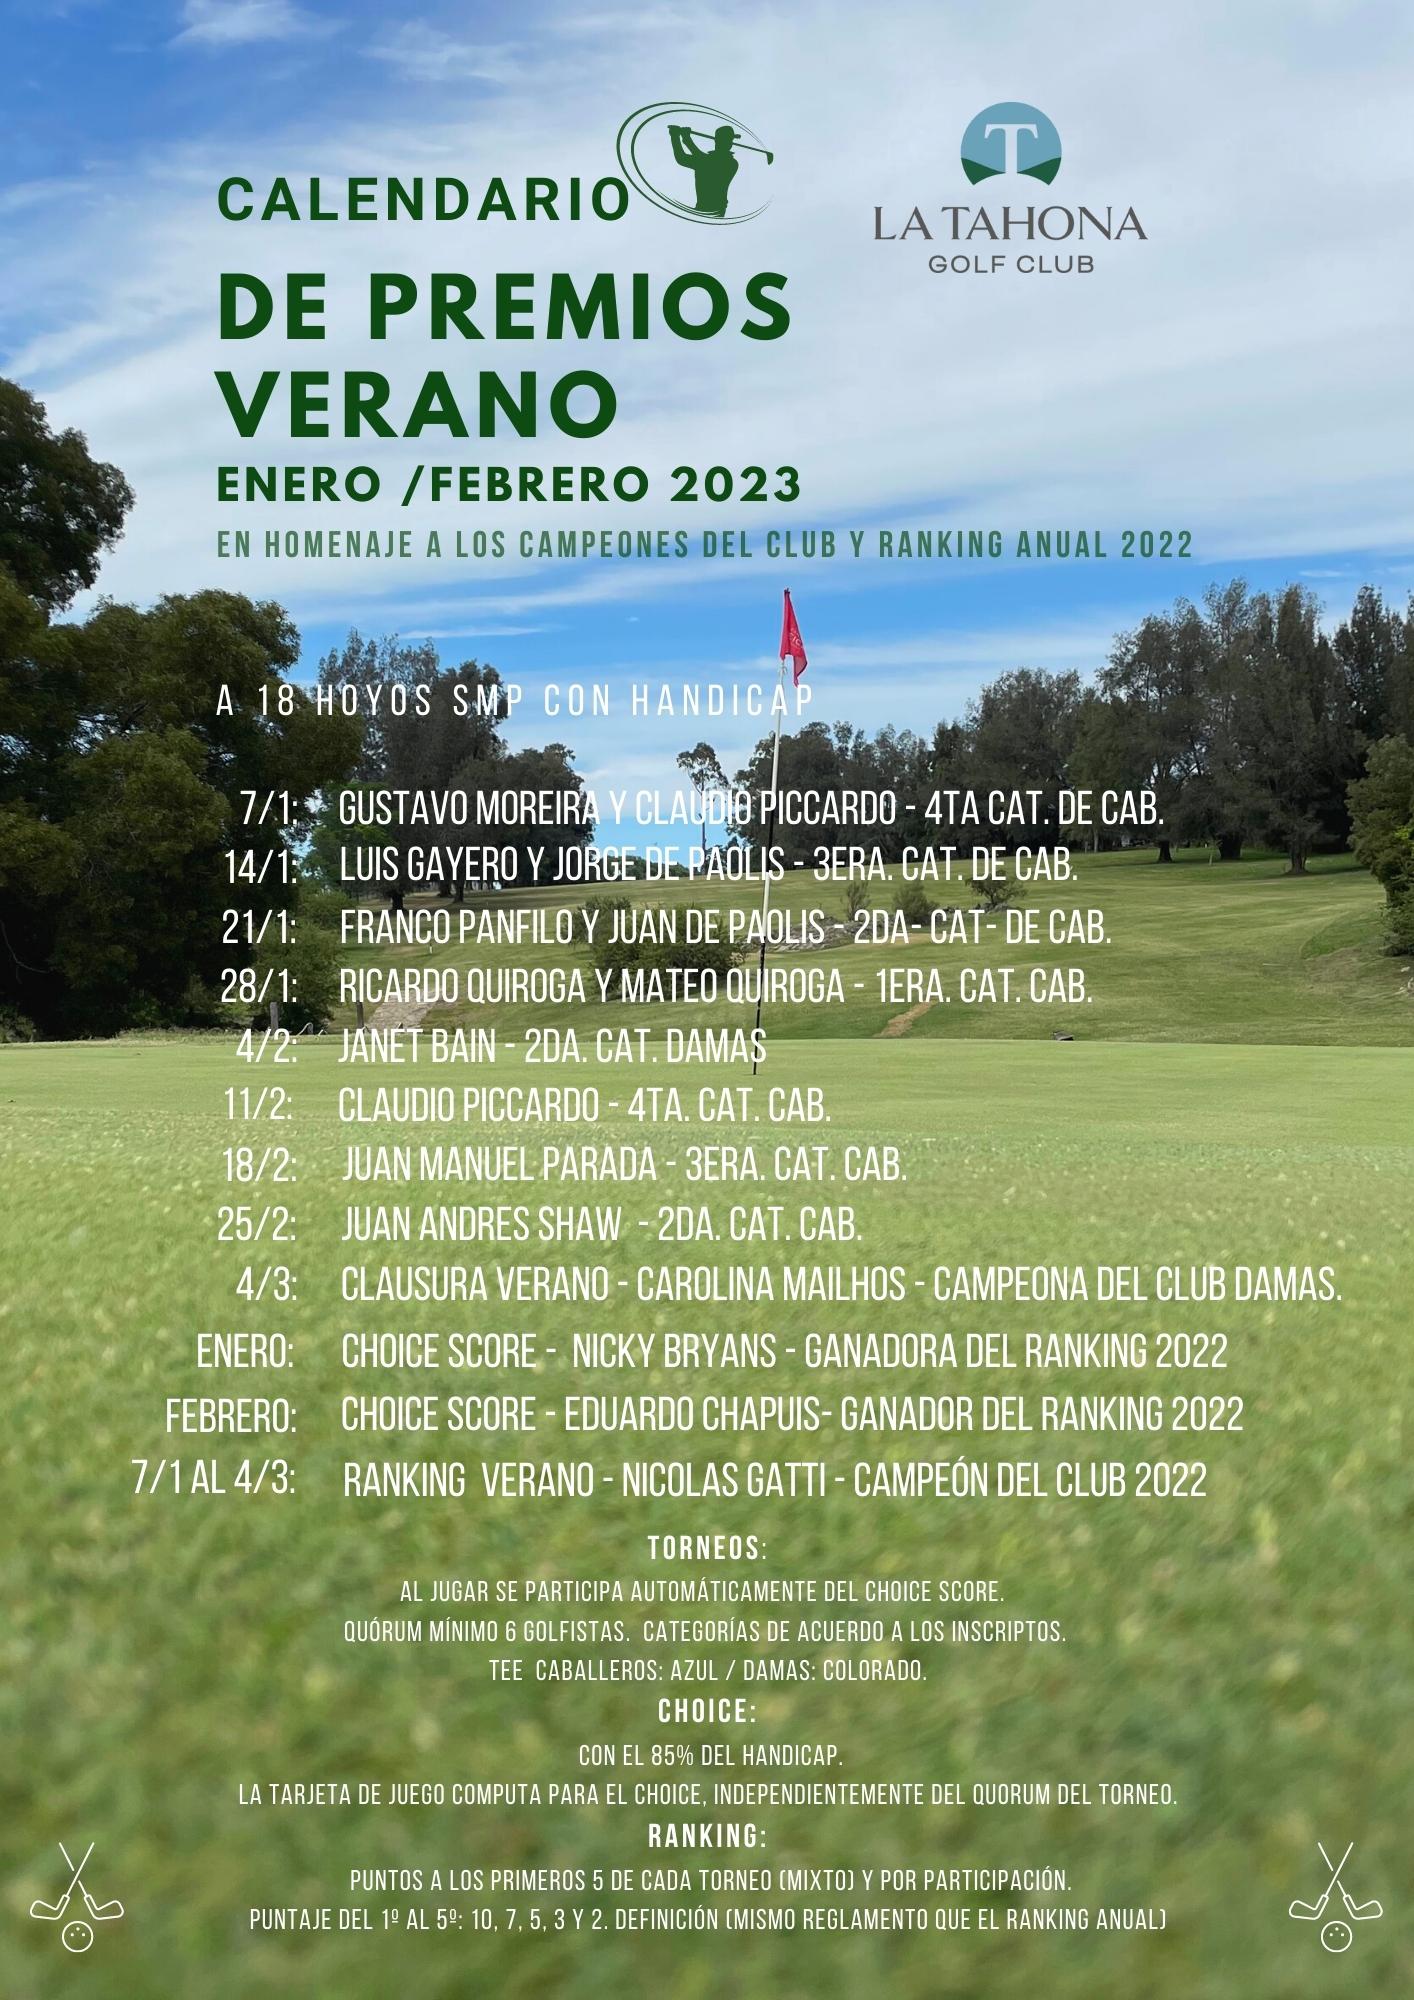 Calendario de Premios Verano 2023 _ En homenaje a los Campeones del Club y Ranking de la pasada temp